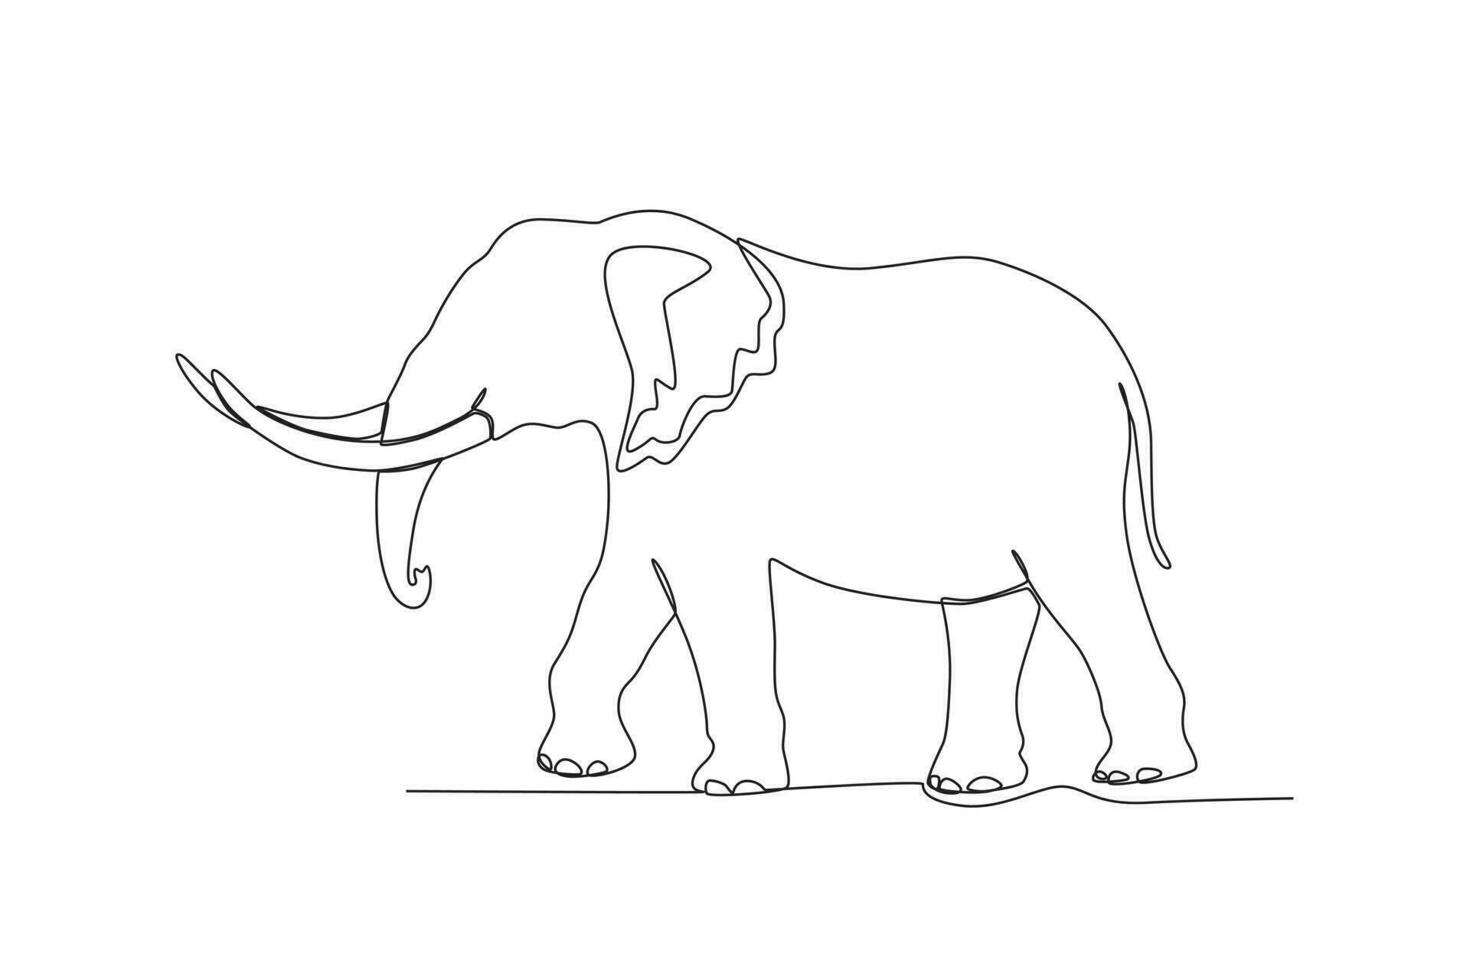 soltero uno línea dibujo de un elefante. continuo línea dibujar diseño gráfico vector ilustración.